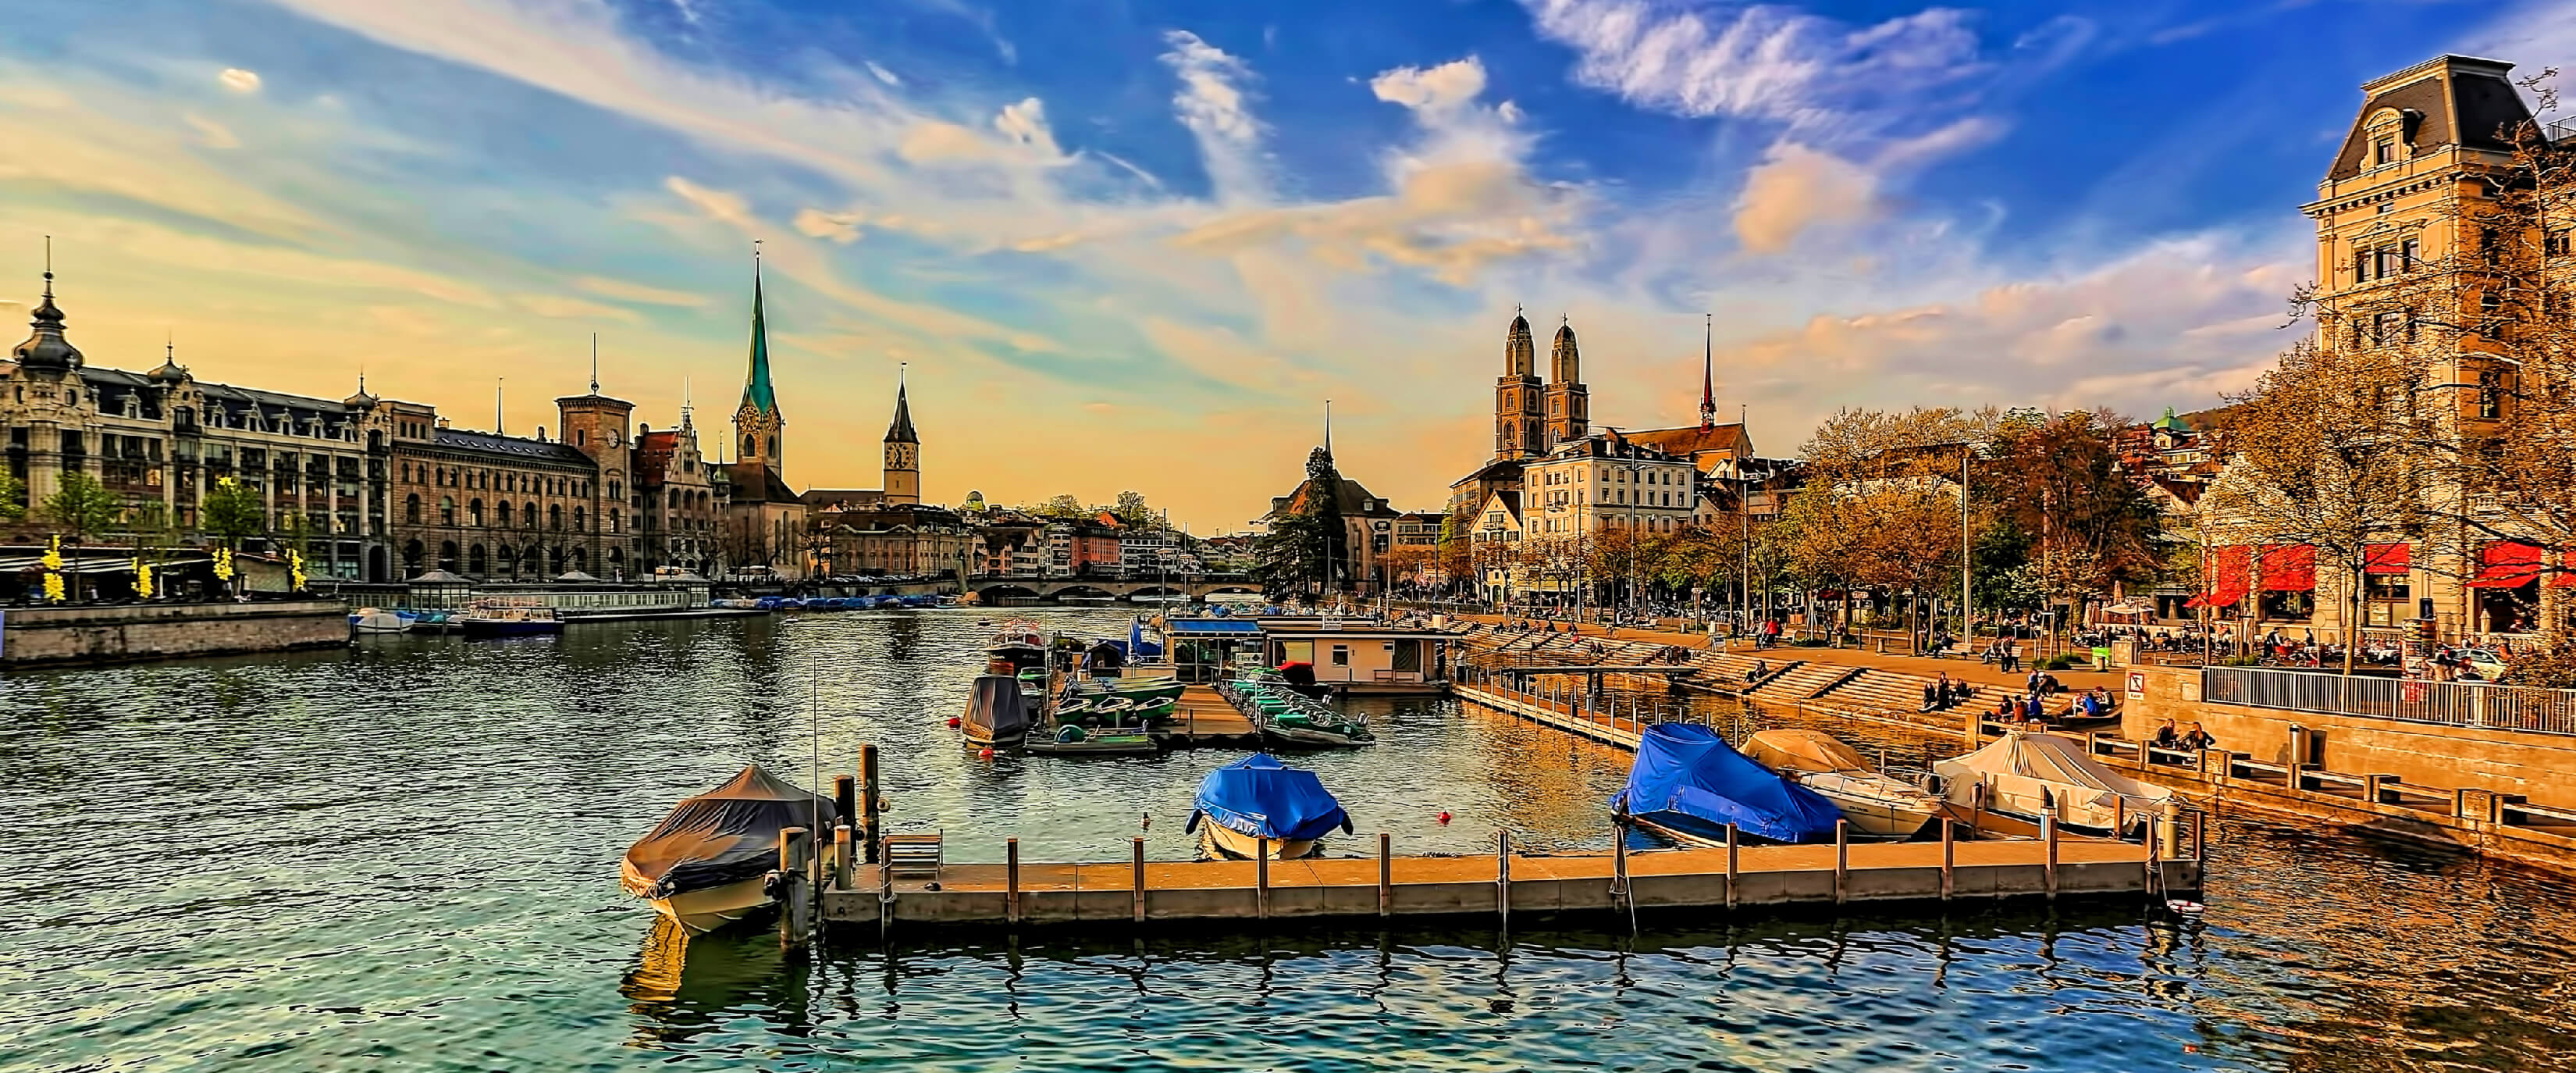 11 Places To Visit In Zürich In 2 Days | Modern Trekker